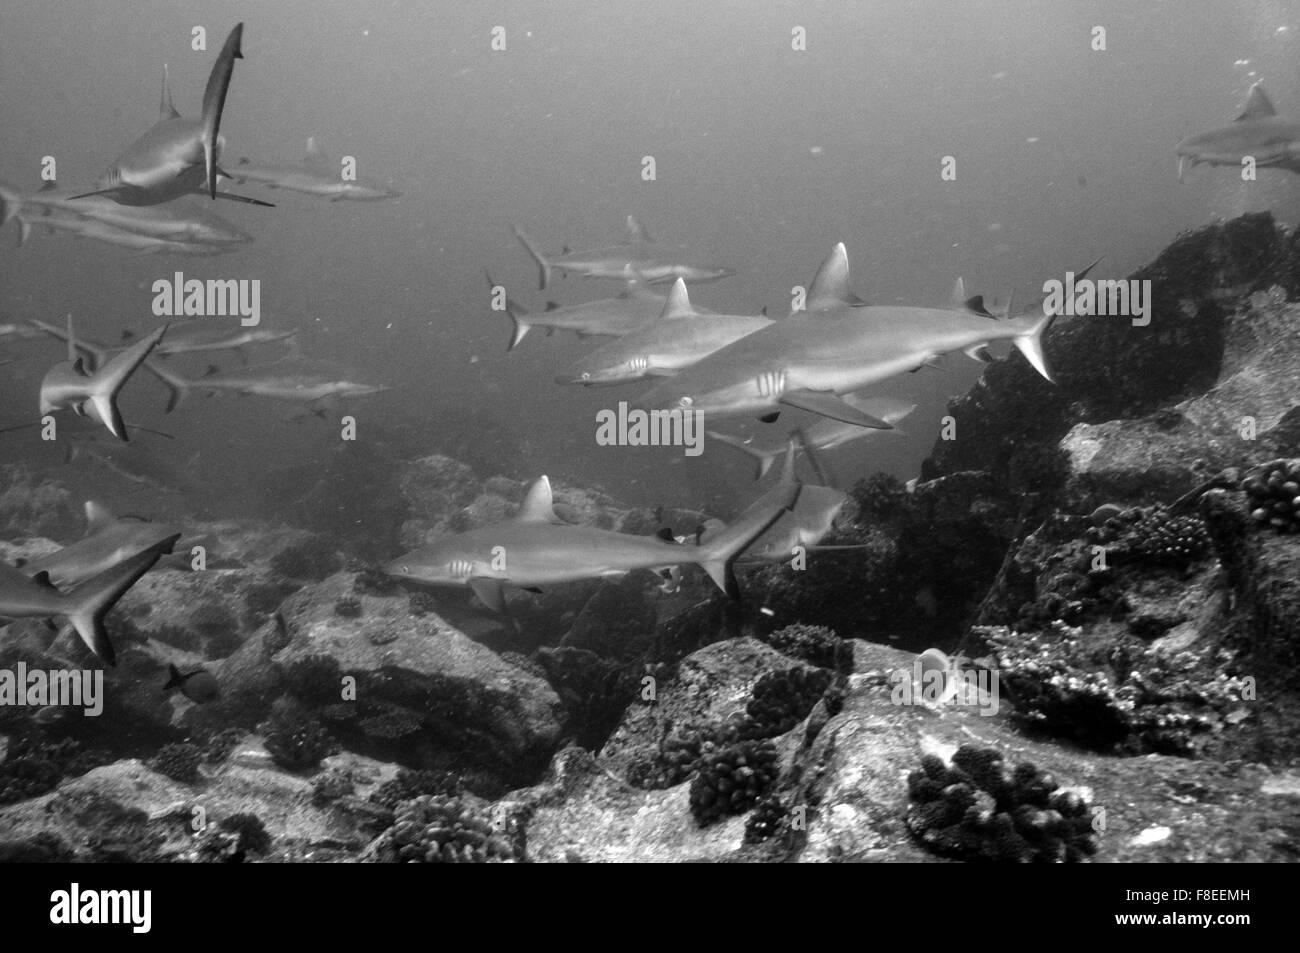 Les requins gris de récif (Carcharhinus amblyrhynchos) Nager dans les roches temple de Marianne Island aux Seychelles. Le noir et blanc Banque D'Images